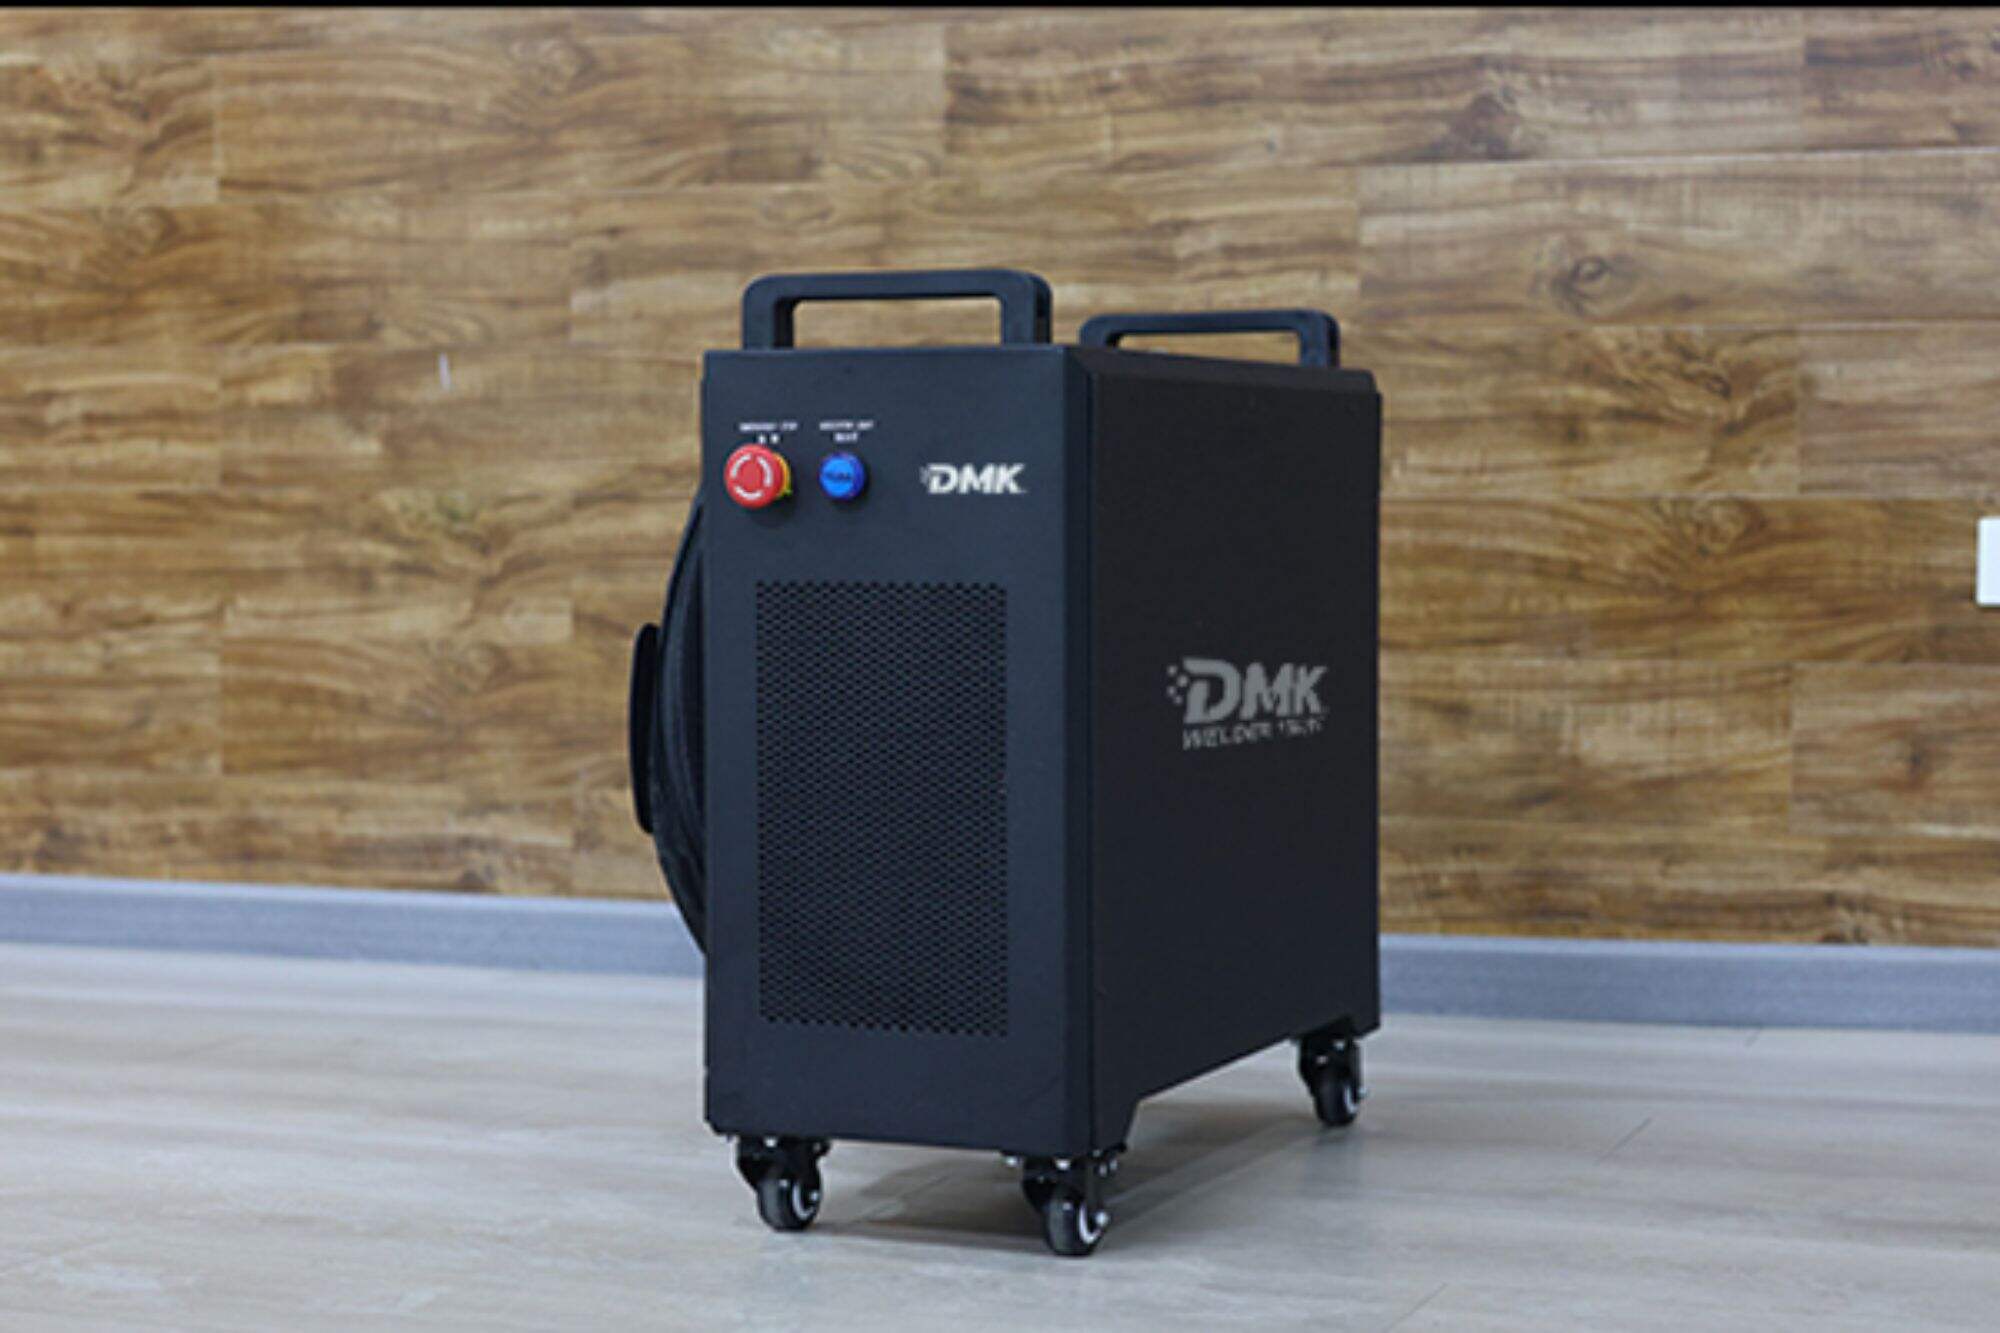 DMK mini hava soğutmalı lazer kaynak makinesi kurulumu DMK mini hava soğutmalı lazer kaynak makinesi kurulum eğitimi